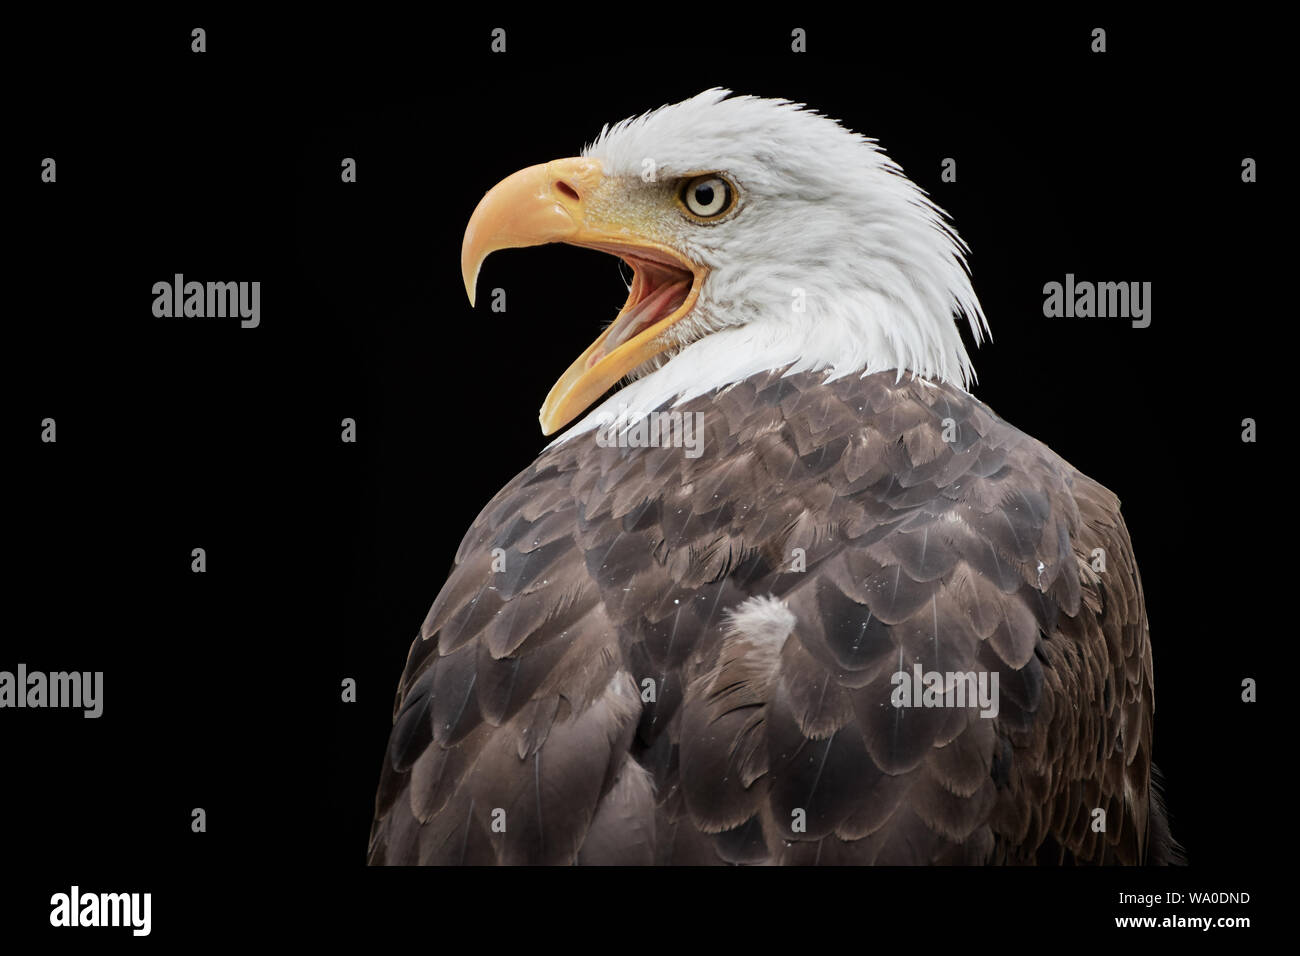 Screeching Bald eagle (Haliaeetus leucocephalus) close-up and isolated on black background Stock Photo